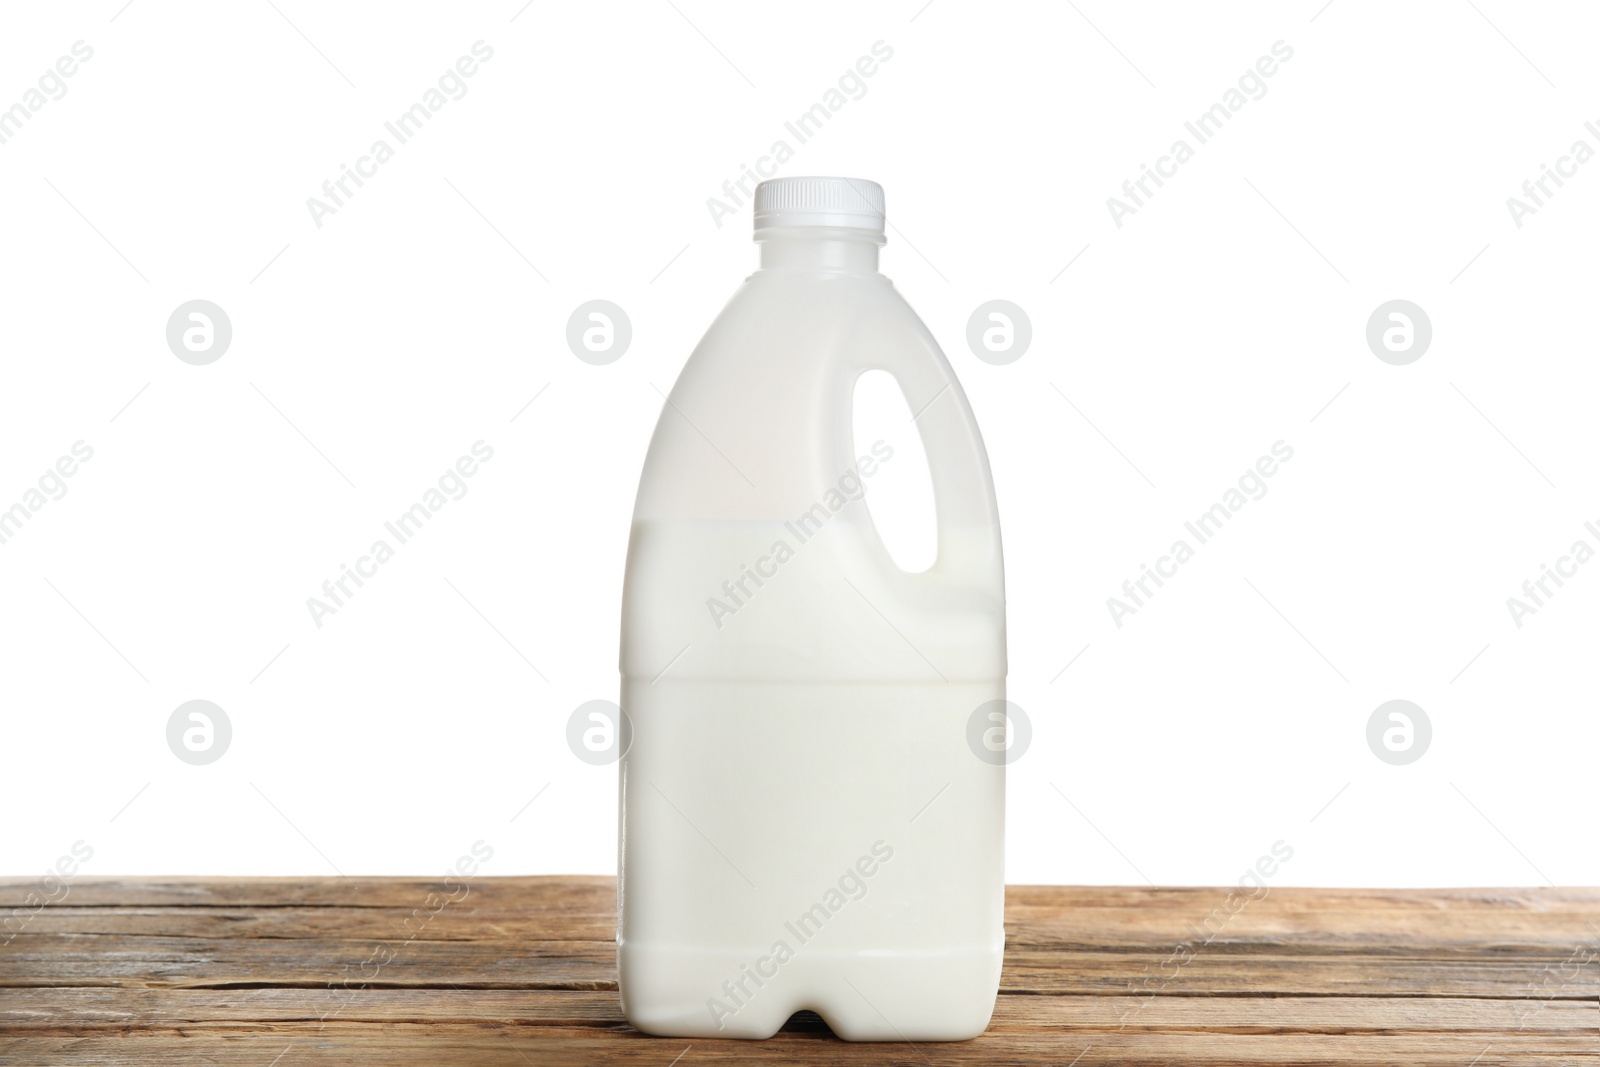 Photo of Gallon bottle of milk on wooden table